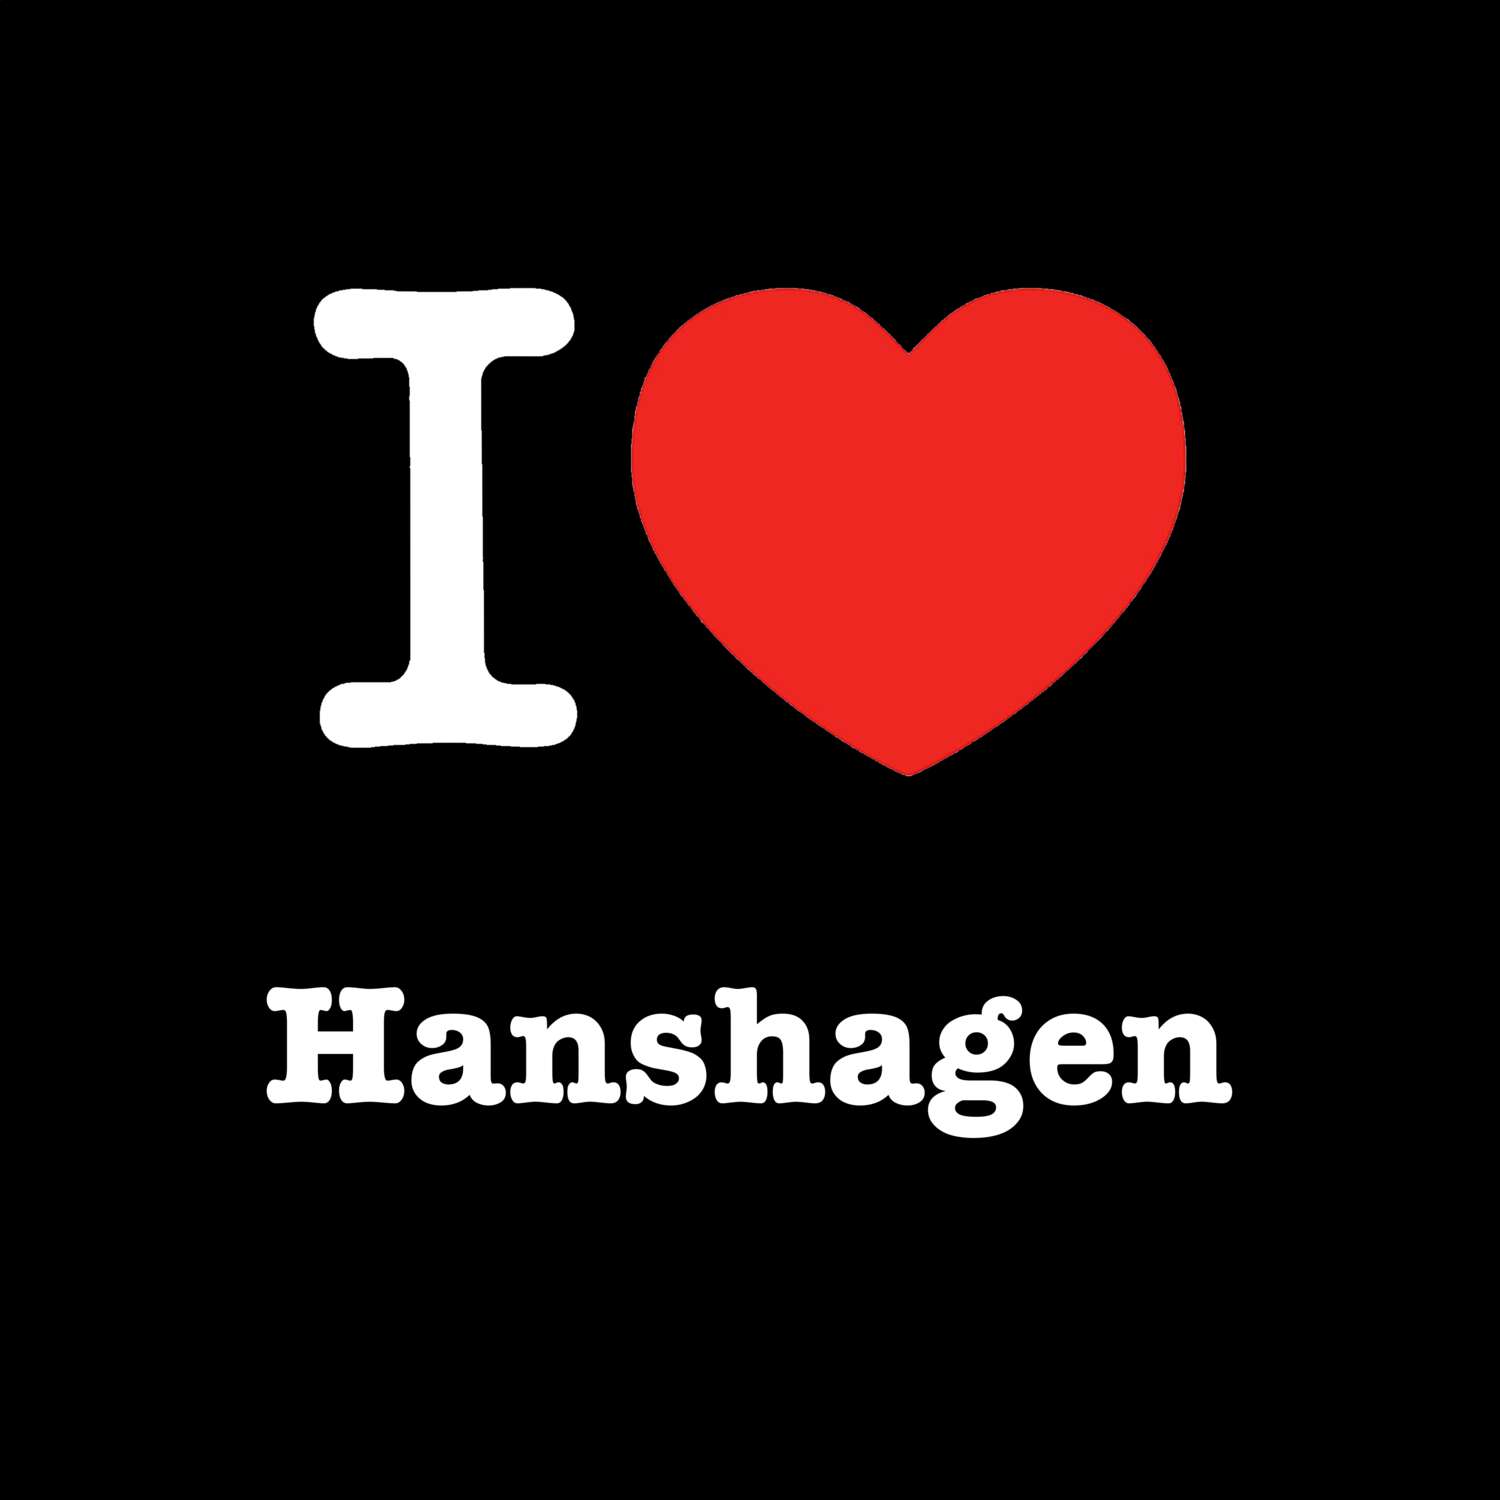 Hanshagen T-Shirt »I love«